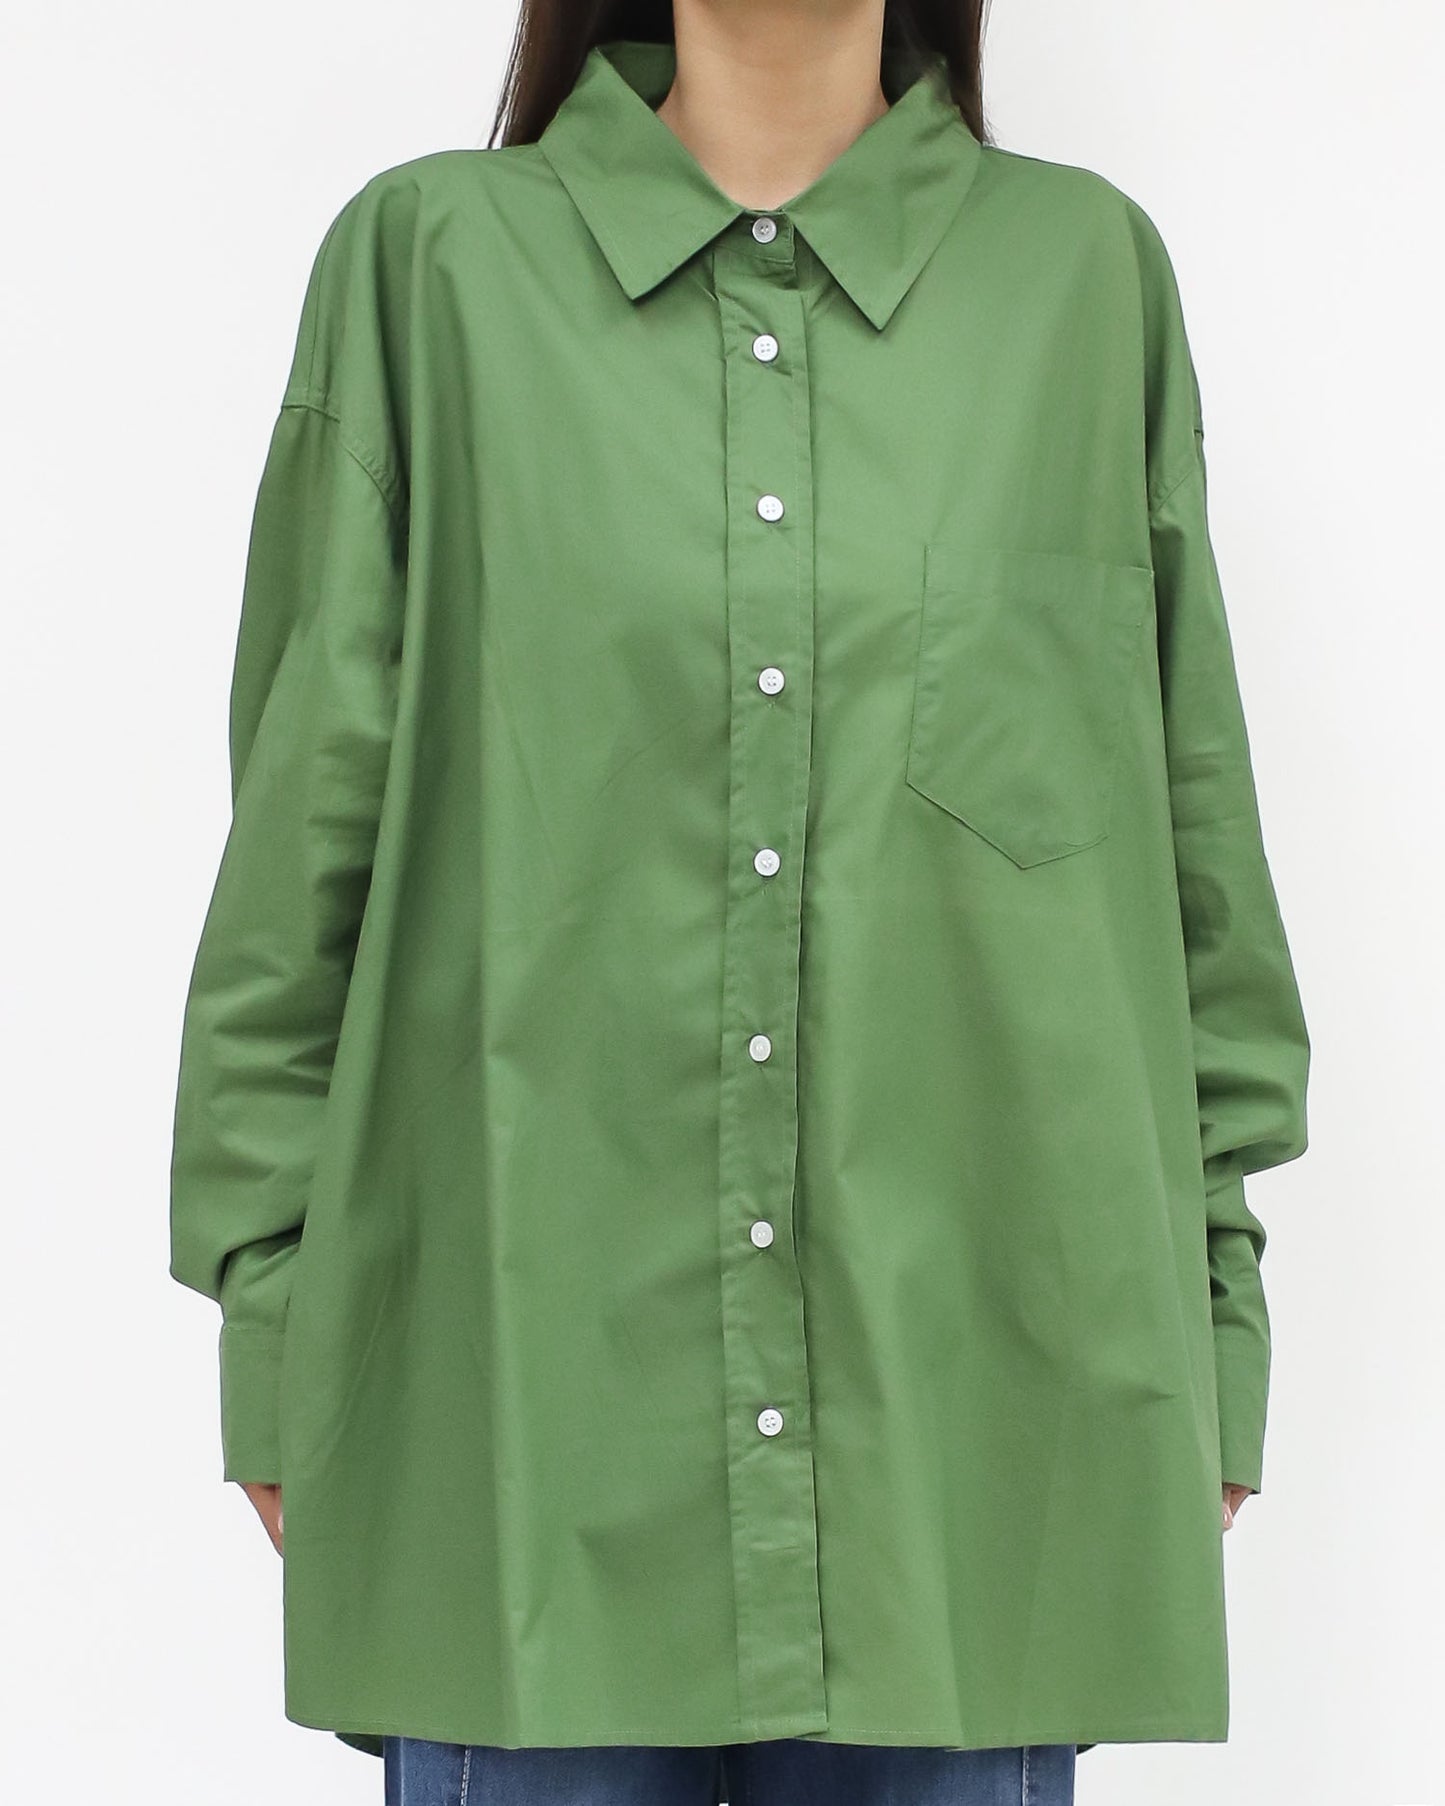 綠色休閒襯衫